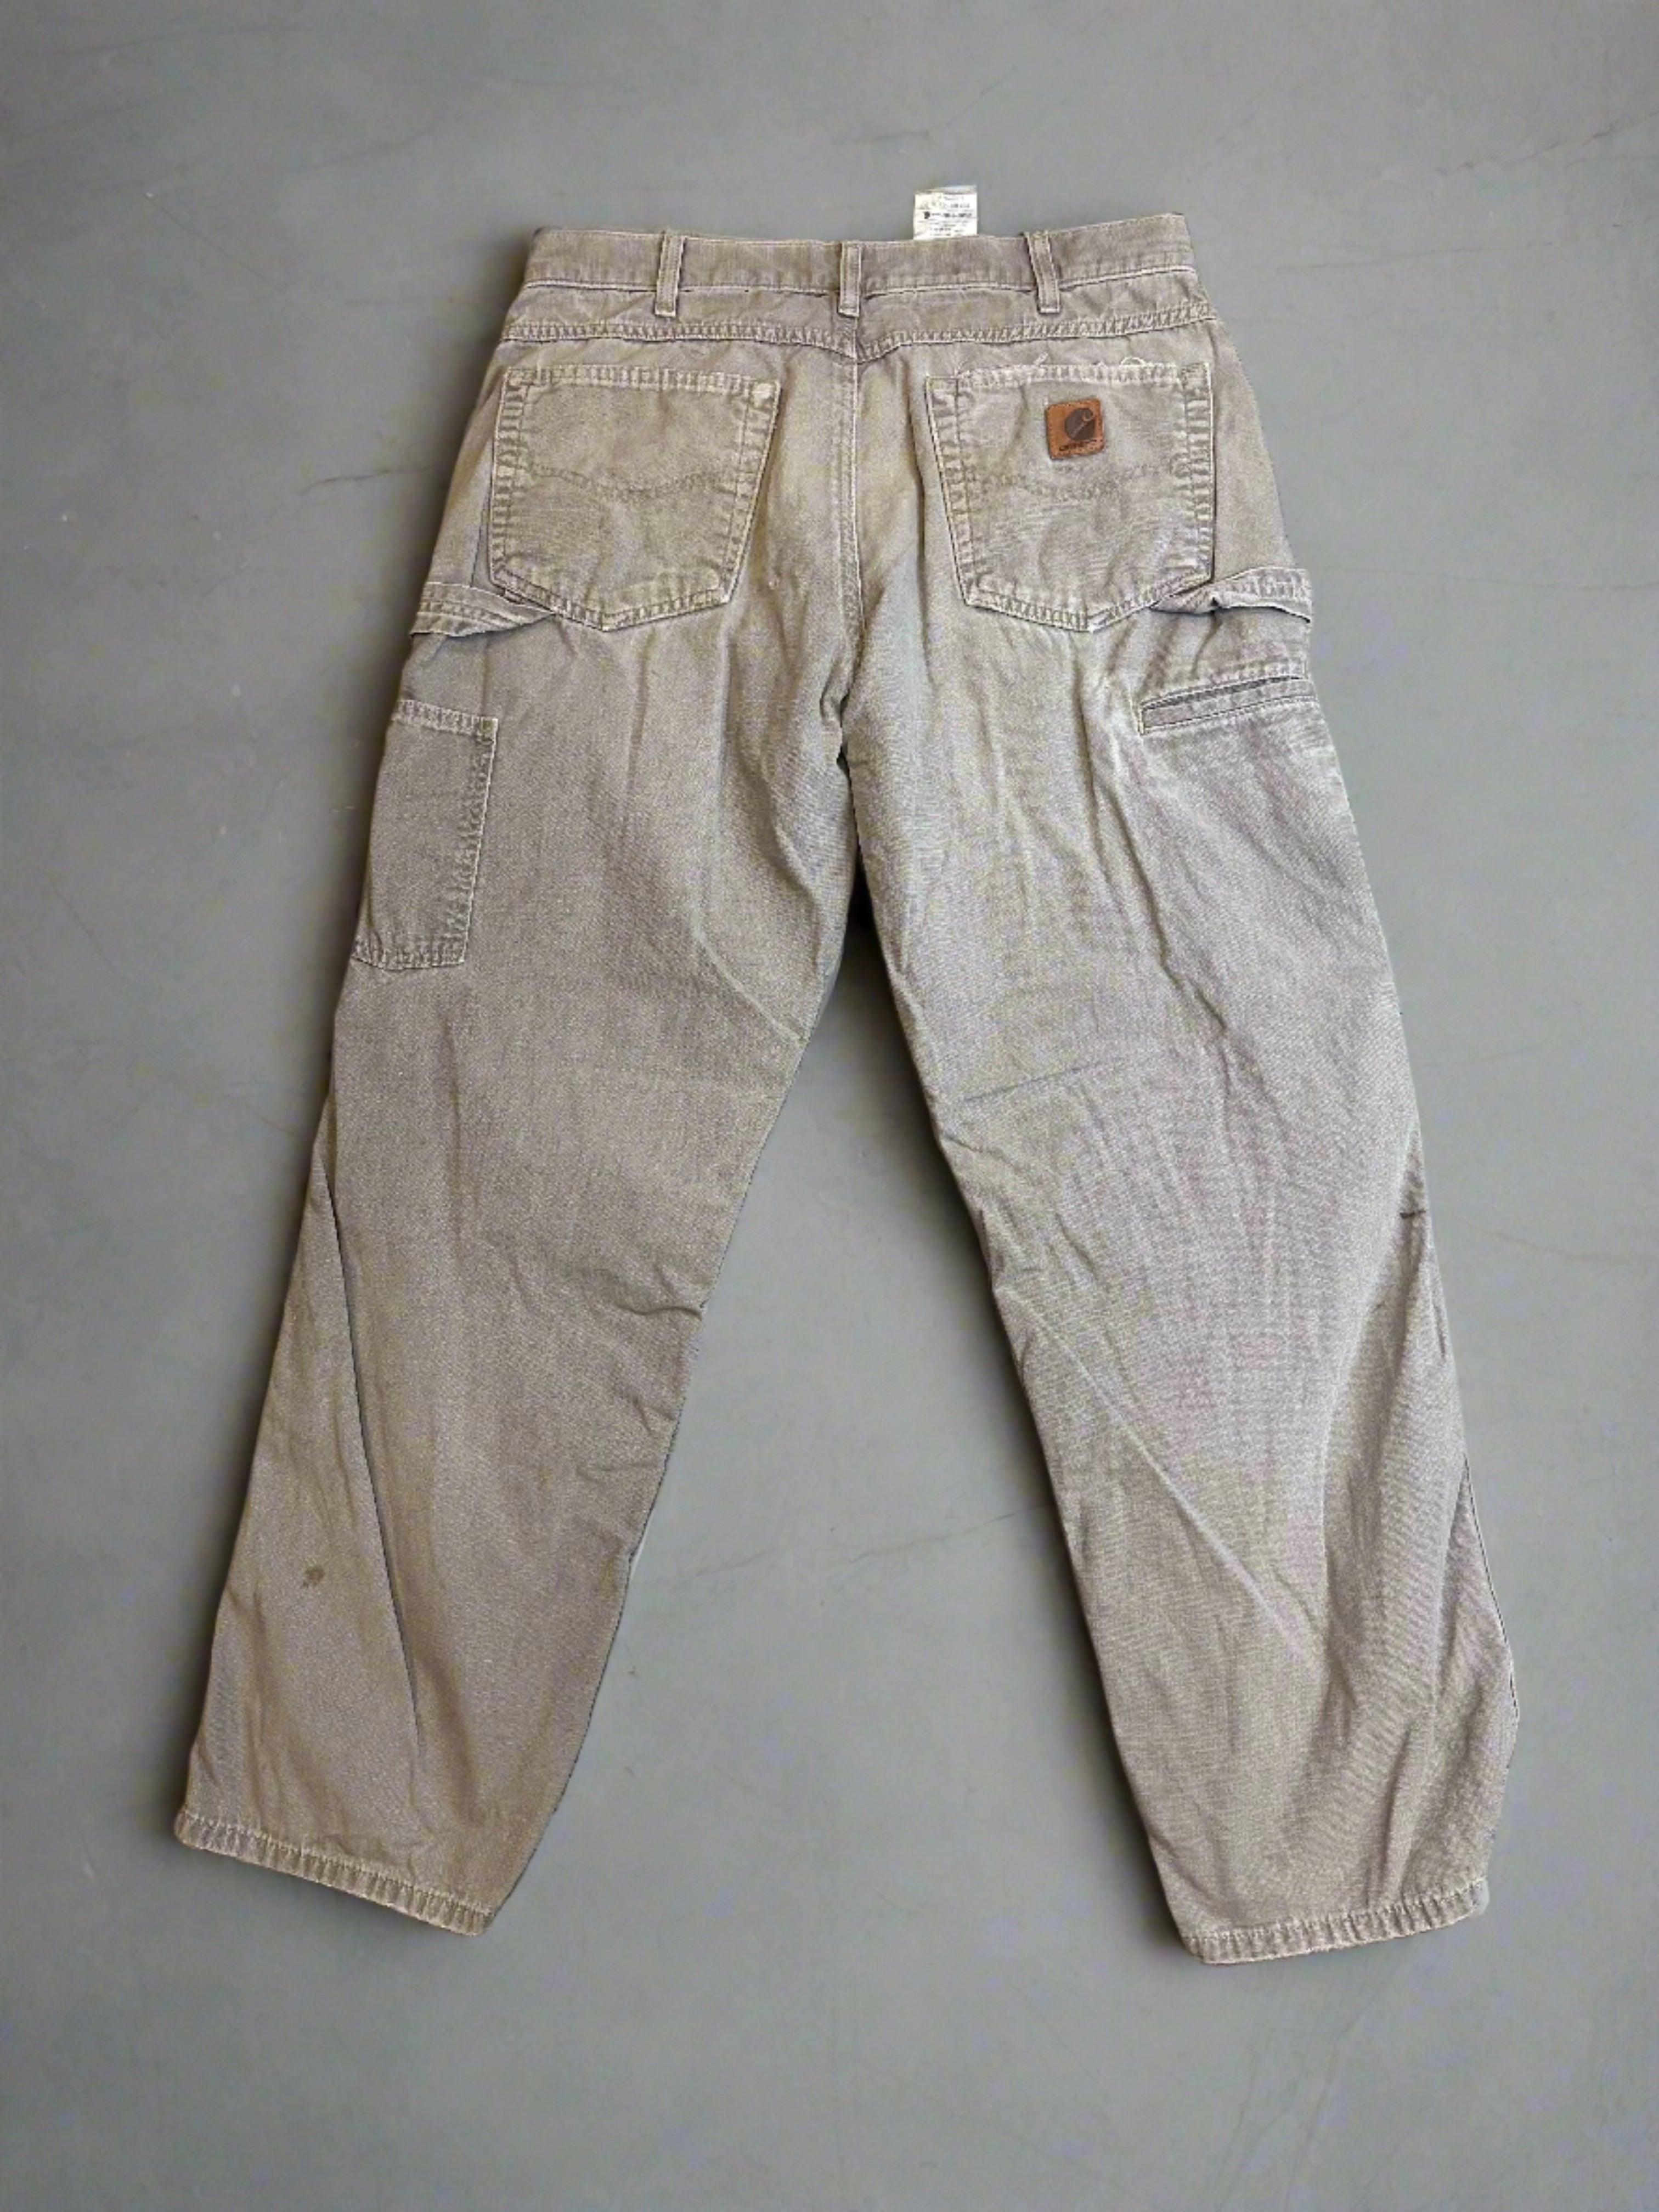 Vintage Carhartt Painter Pants - size 33x30